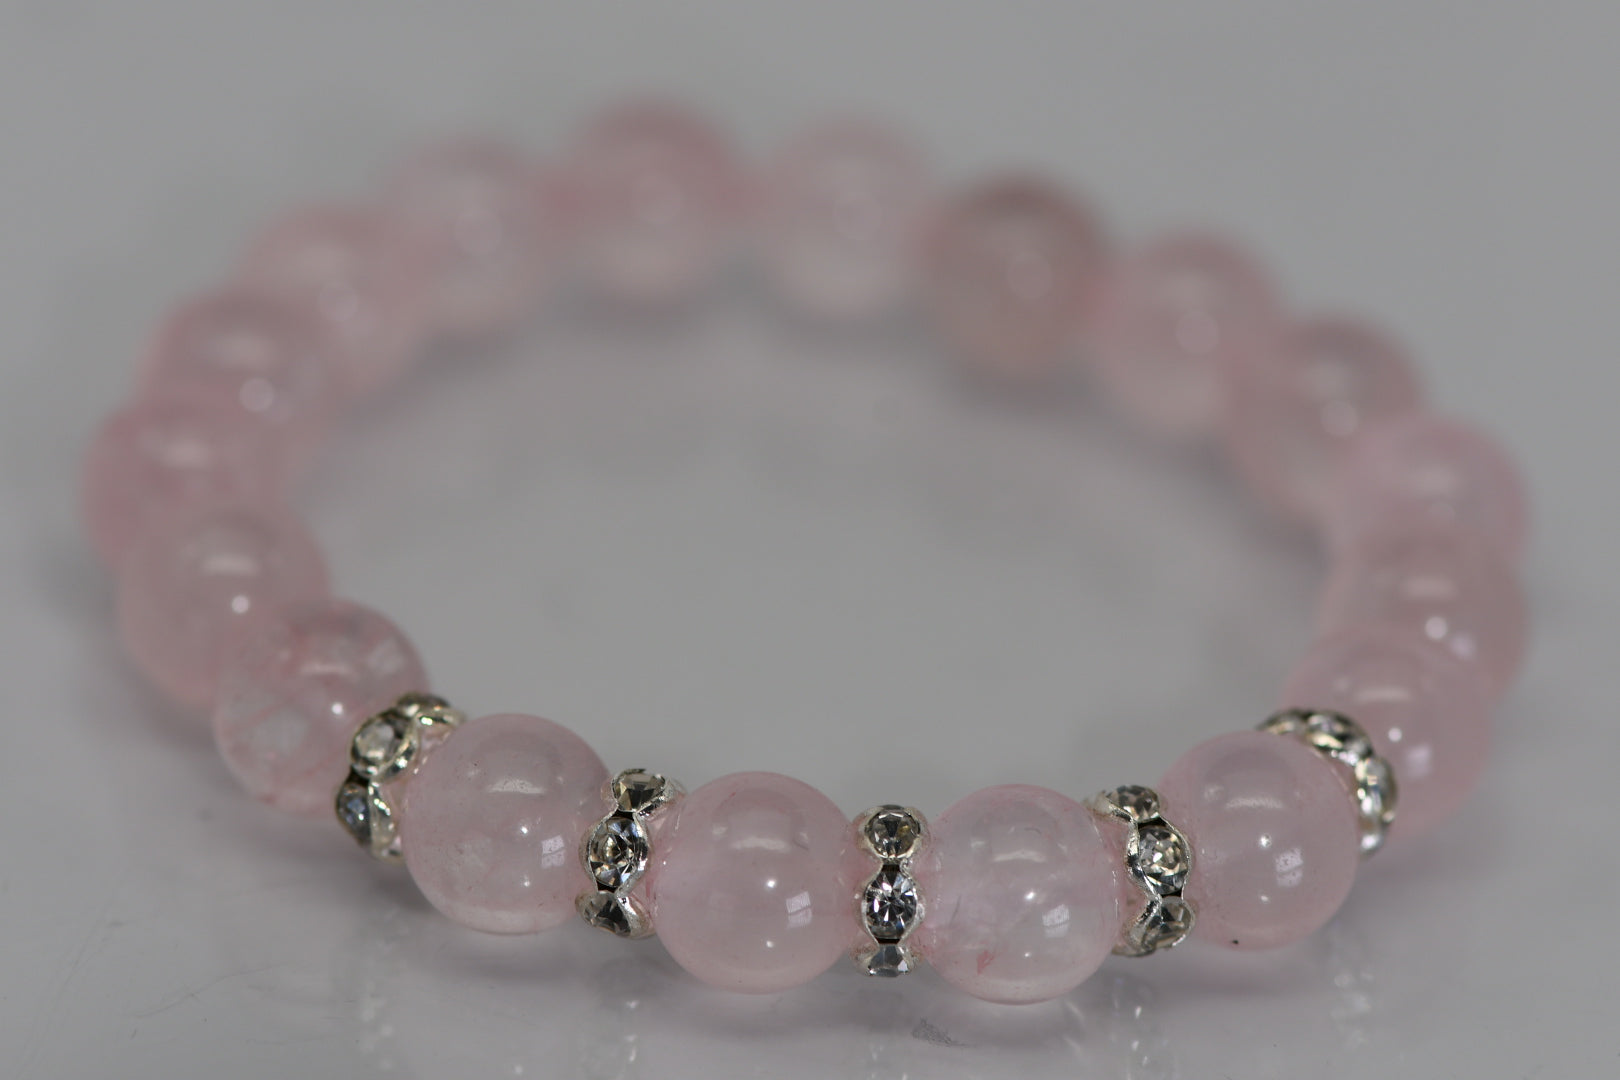 Rose quartz bracelet with rhinestone spacers